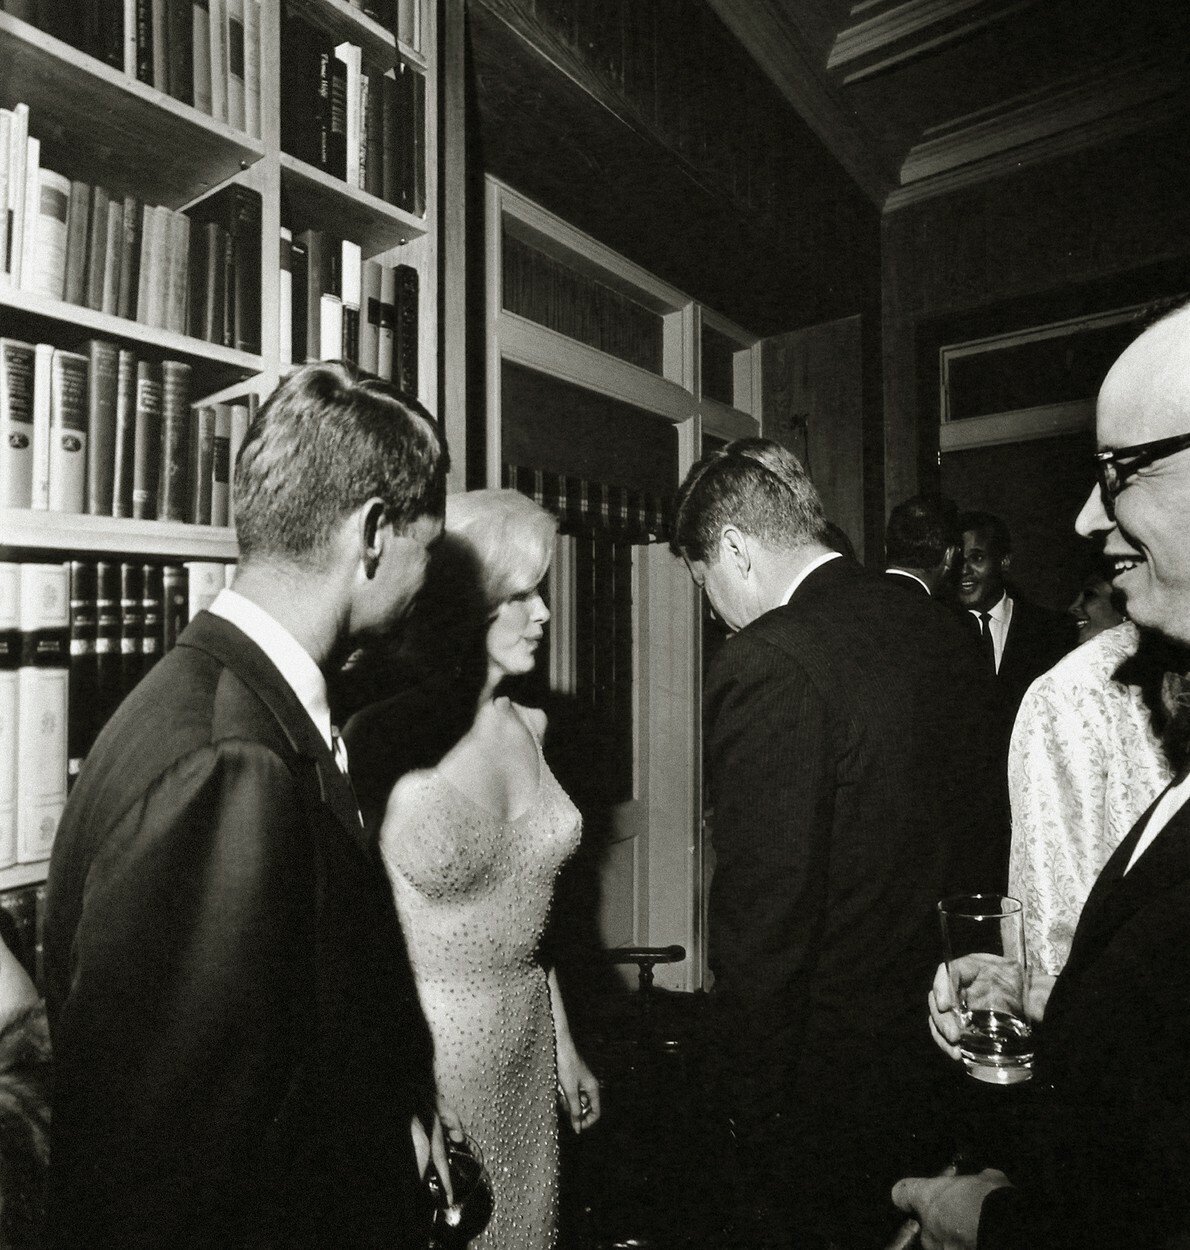 Kim oblékla zlatavou róbu jednoduché přiléhavé siluety, kterou oblékla v roce 1962 Marilyn Monroe. Tehdy se v nich vyjímala, když zpívala song „Happy Birthday Mr. President“ J. F. Kennedymu k jeho 45. narozeninám.